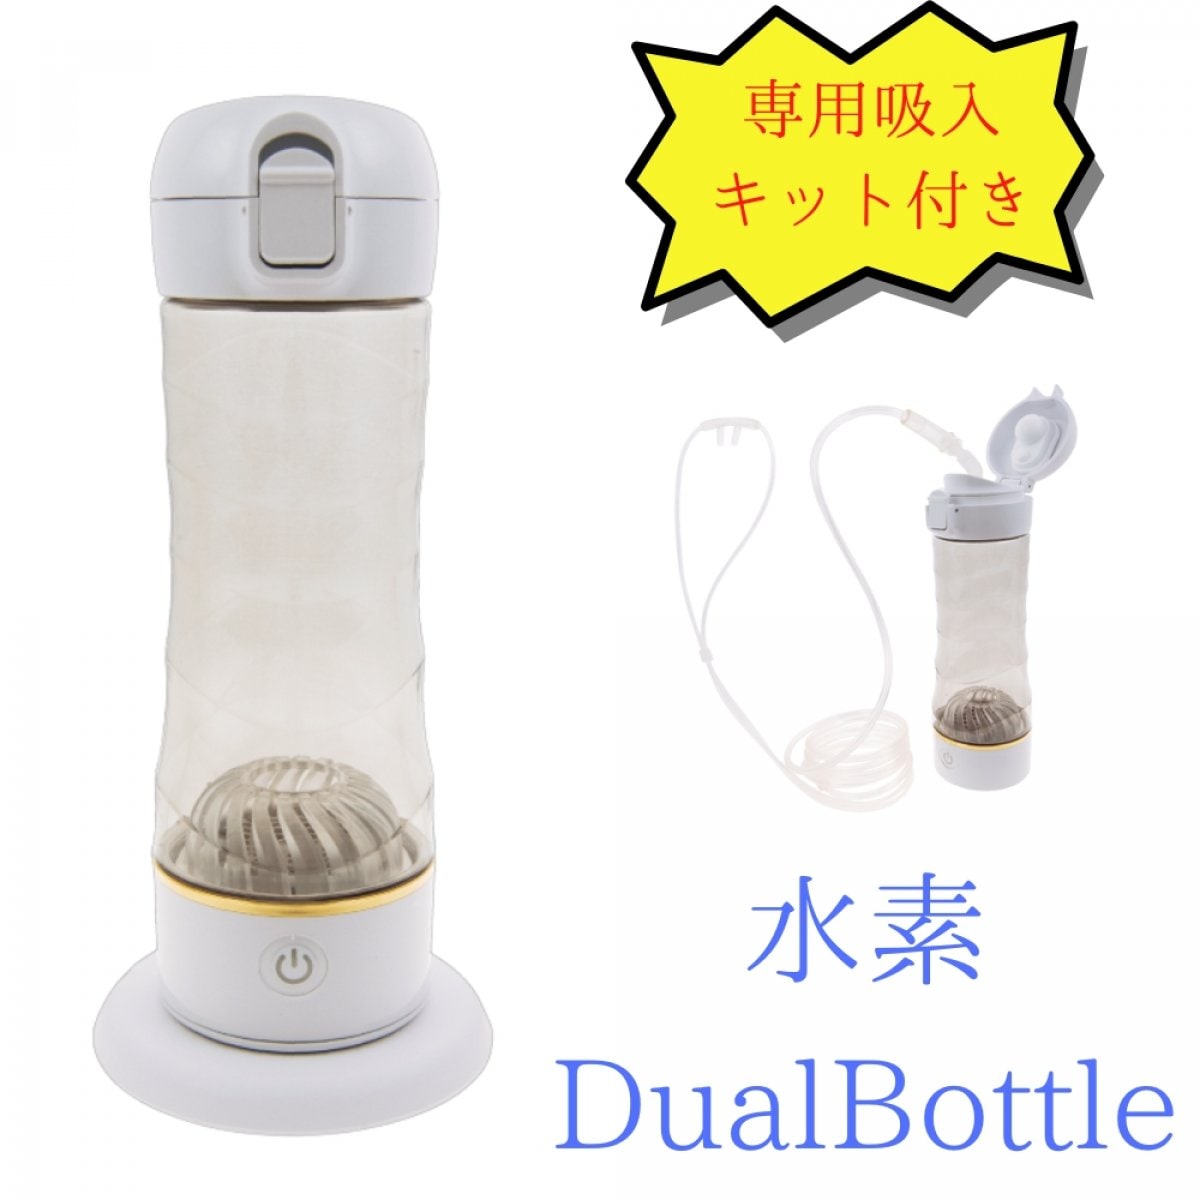 水素 Dual Bottle | 持ち運びできる水素吸入器 | ワイヤレス充電式 | 水素を呼吸から取り入れられる専用吸入キット付き